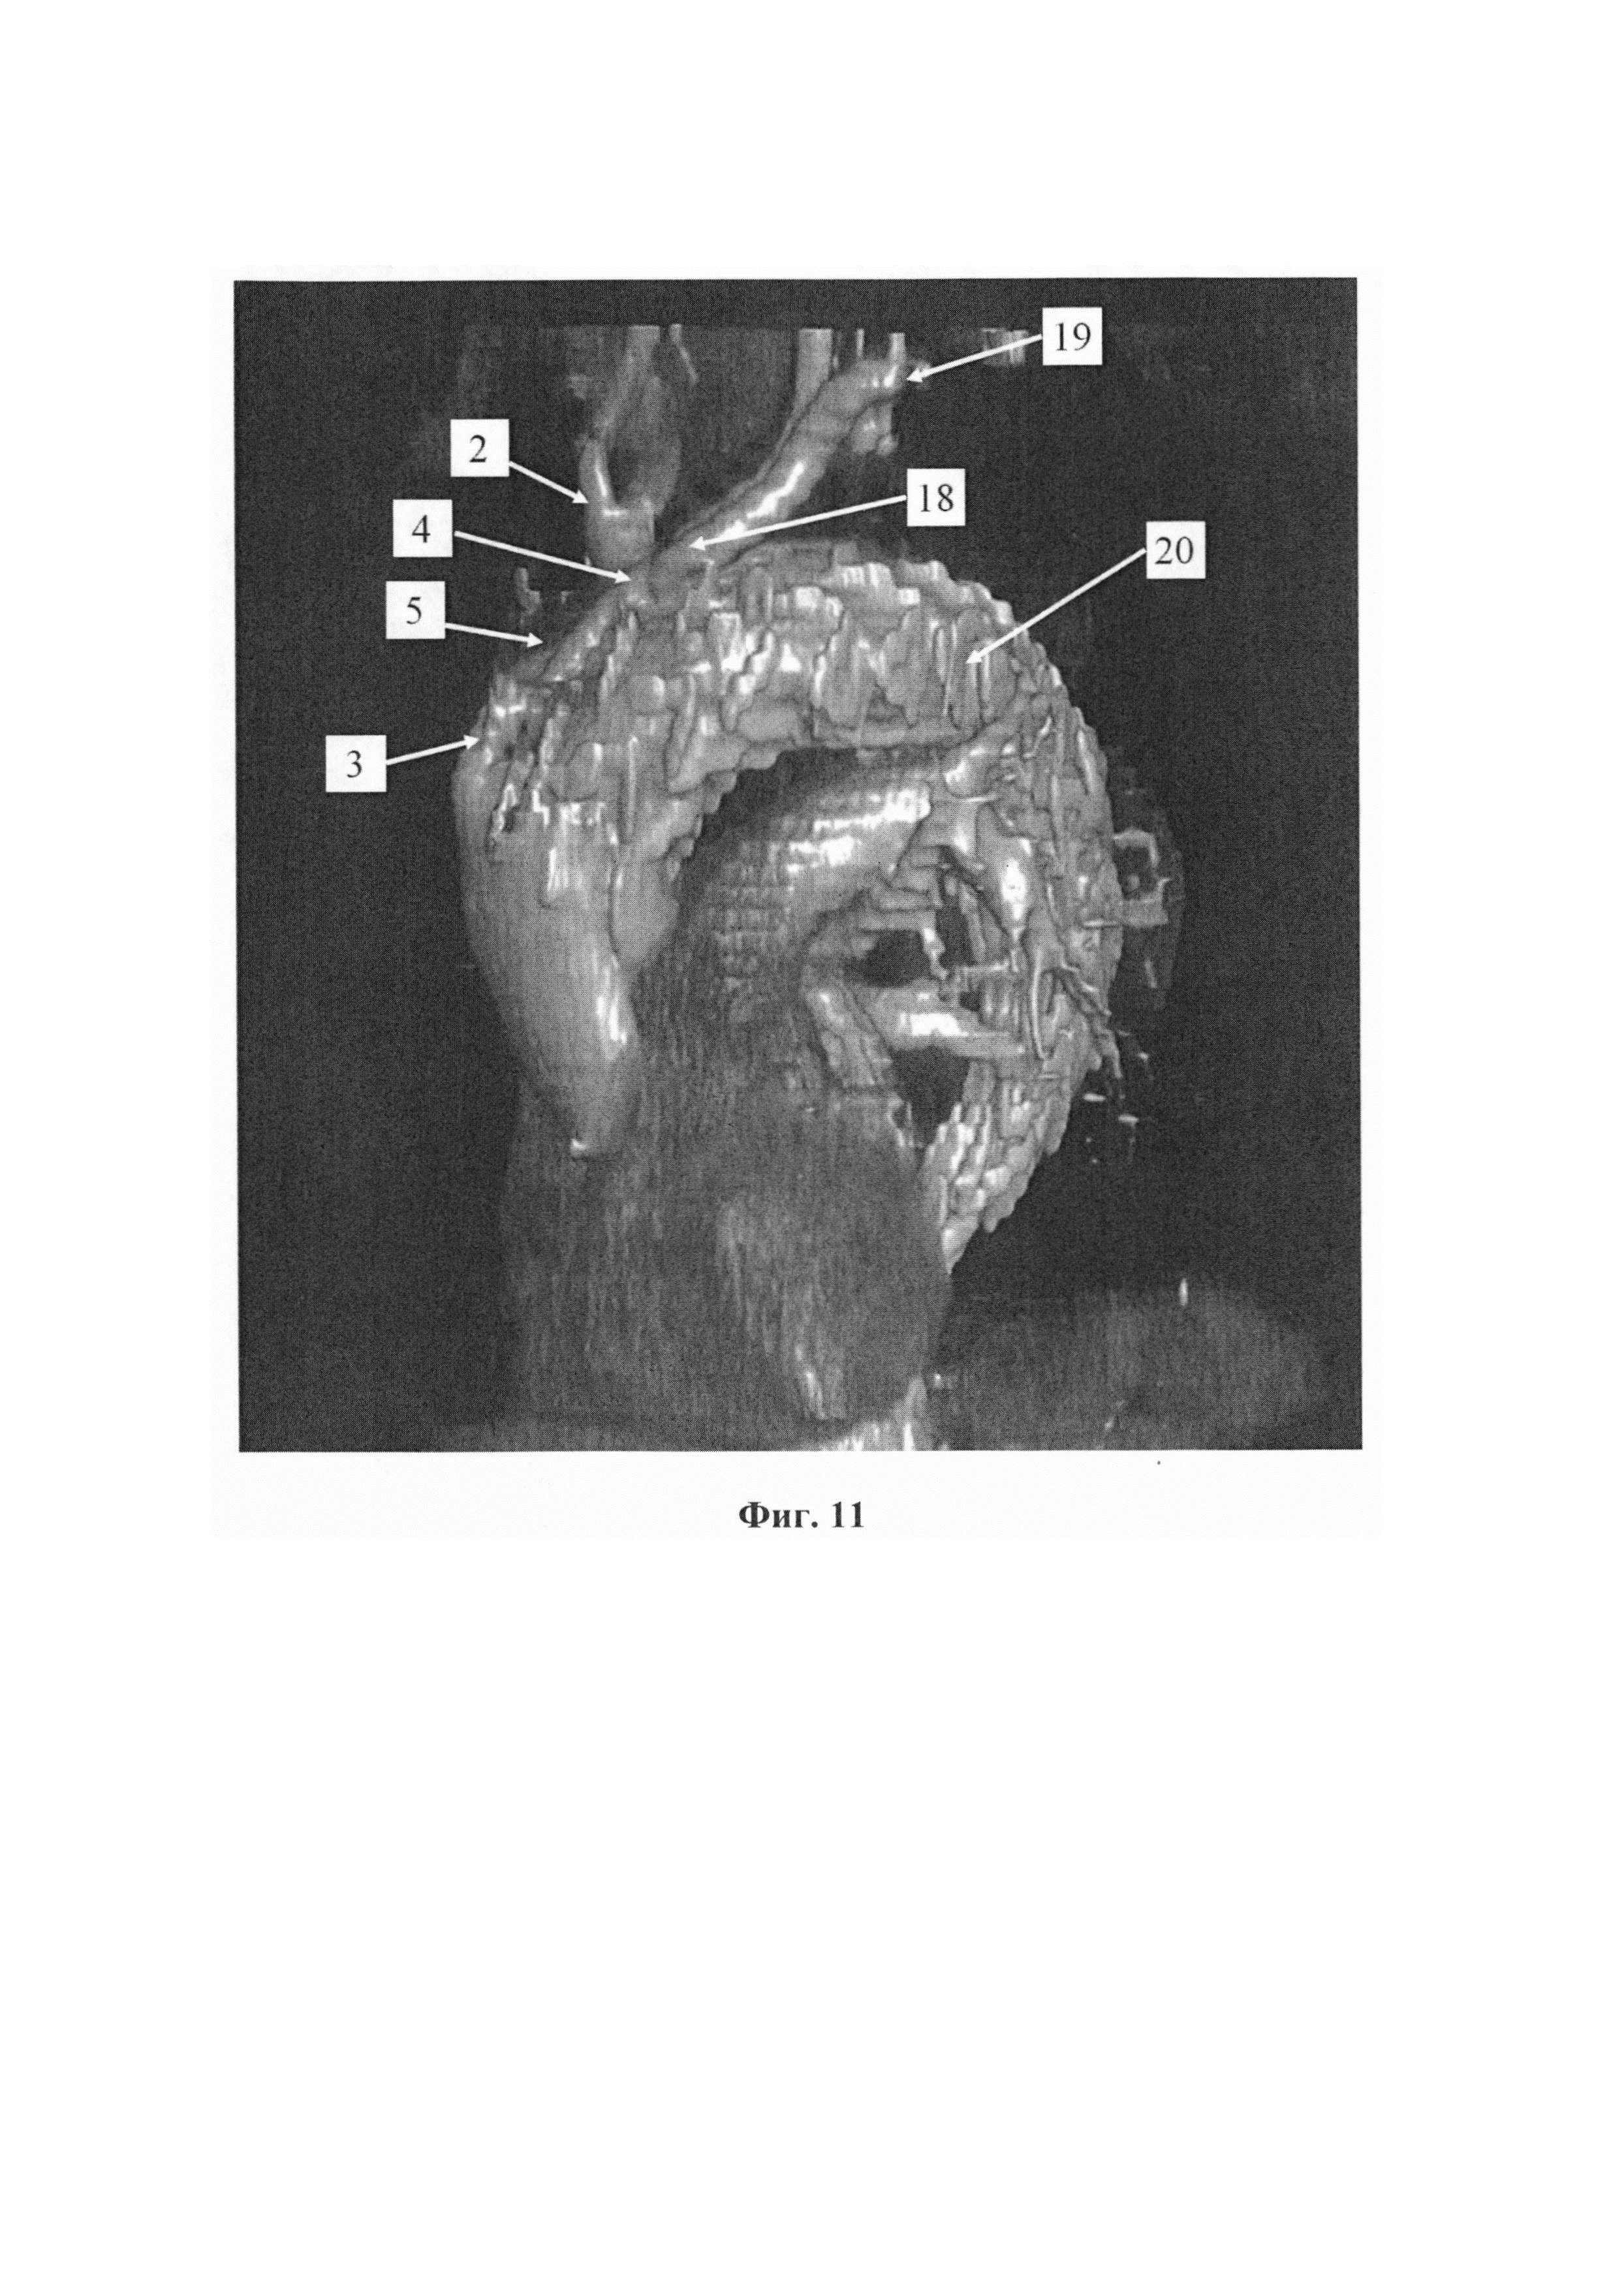 Способ гибридного лечения аневризмы аорты без искусственного кровообращения с поддержанием перфузии головного мозга во время транспозиции ветвей дуги аорты